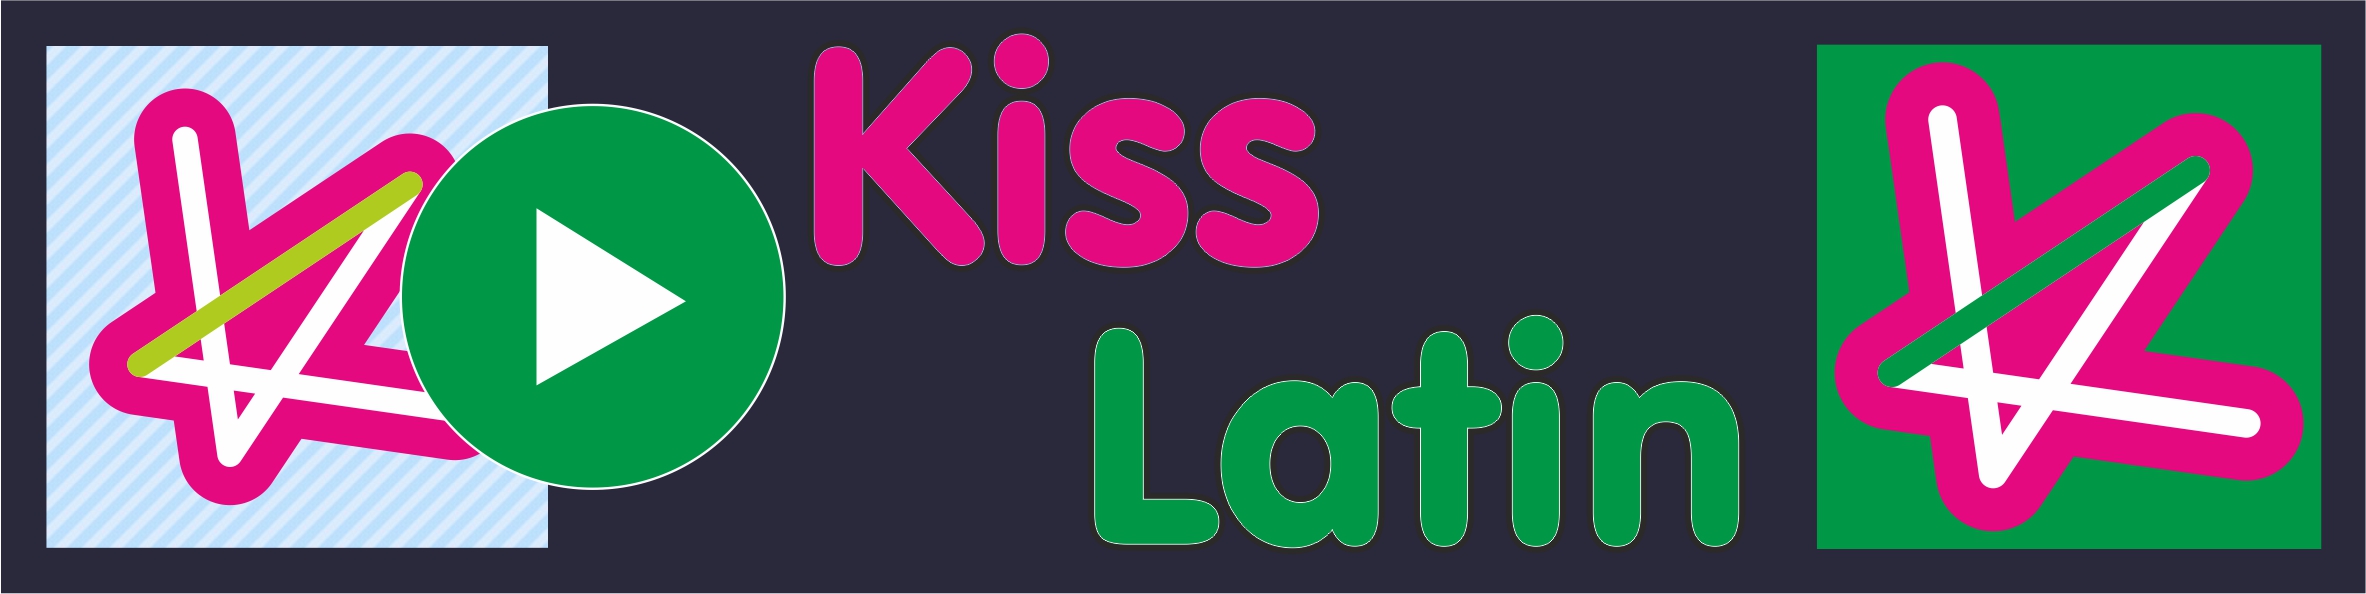 Kiss Latin